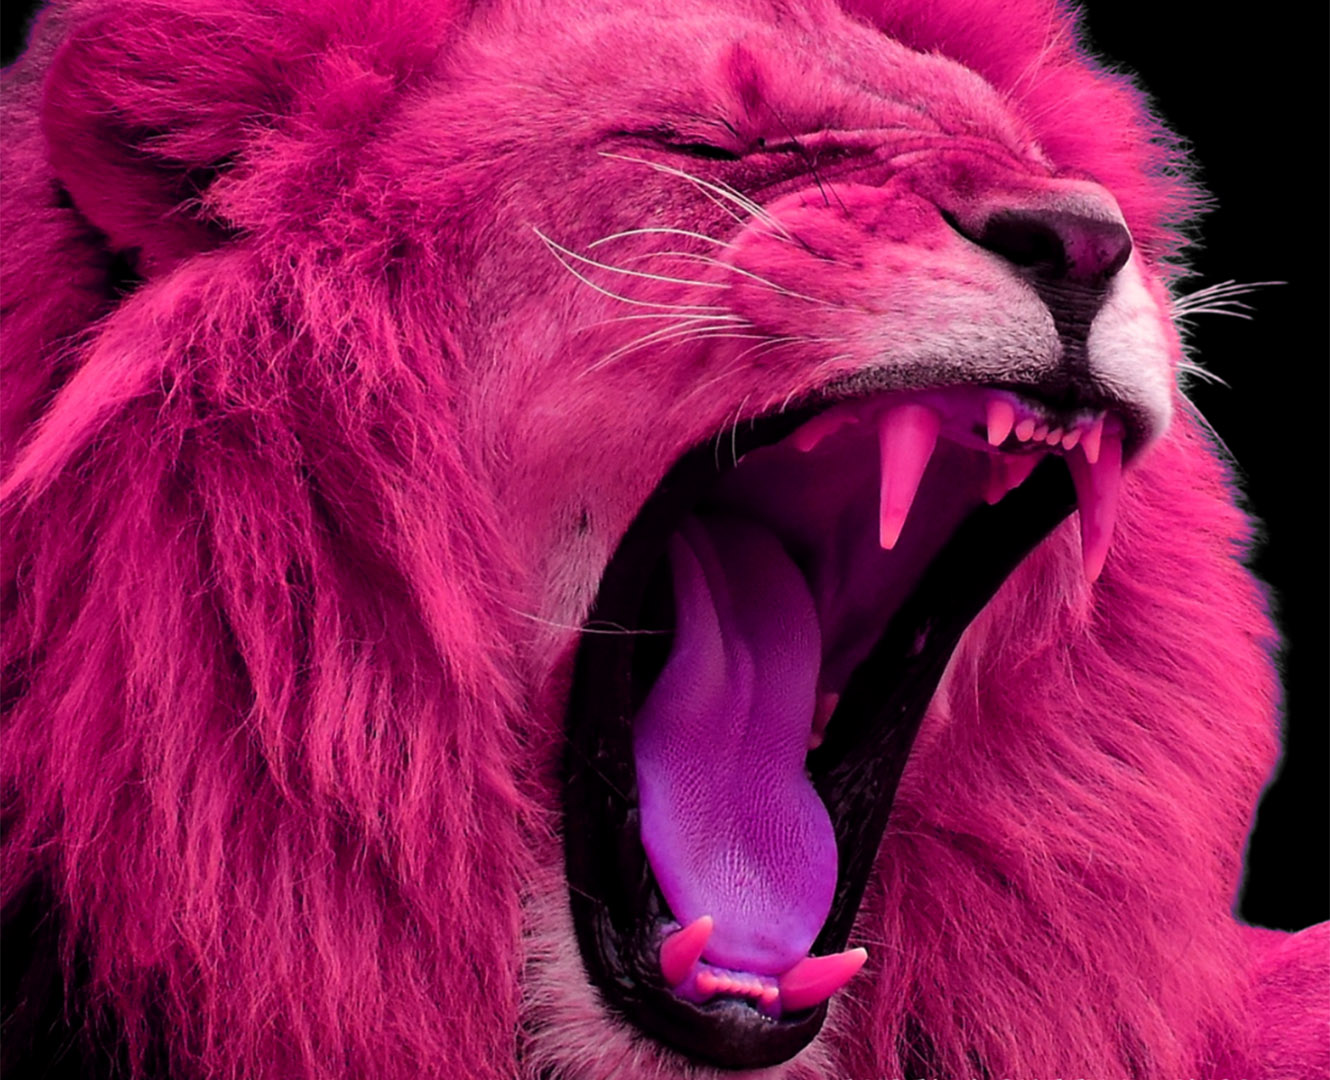 Pink lion roaring